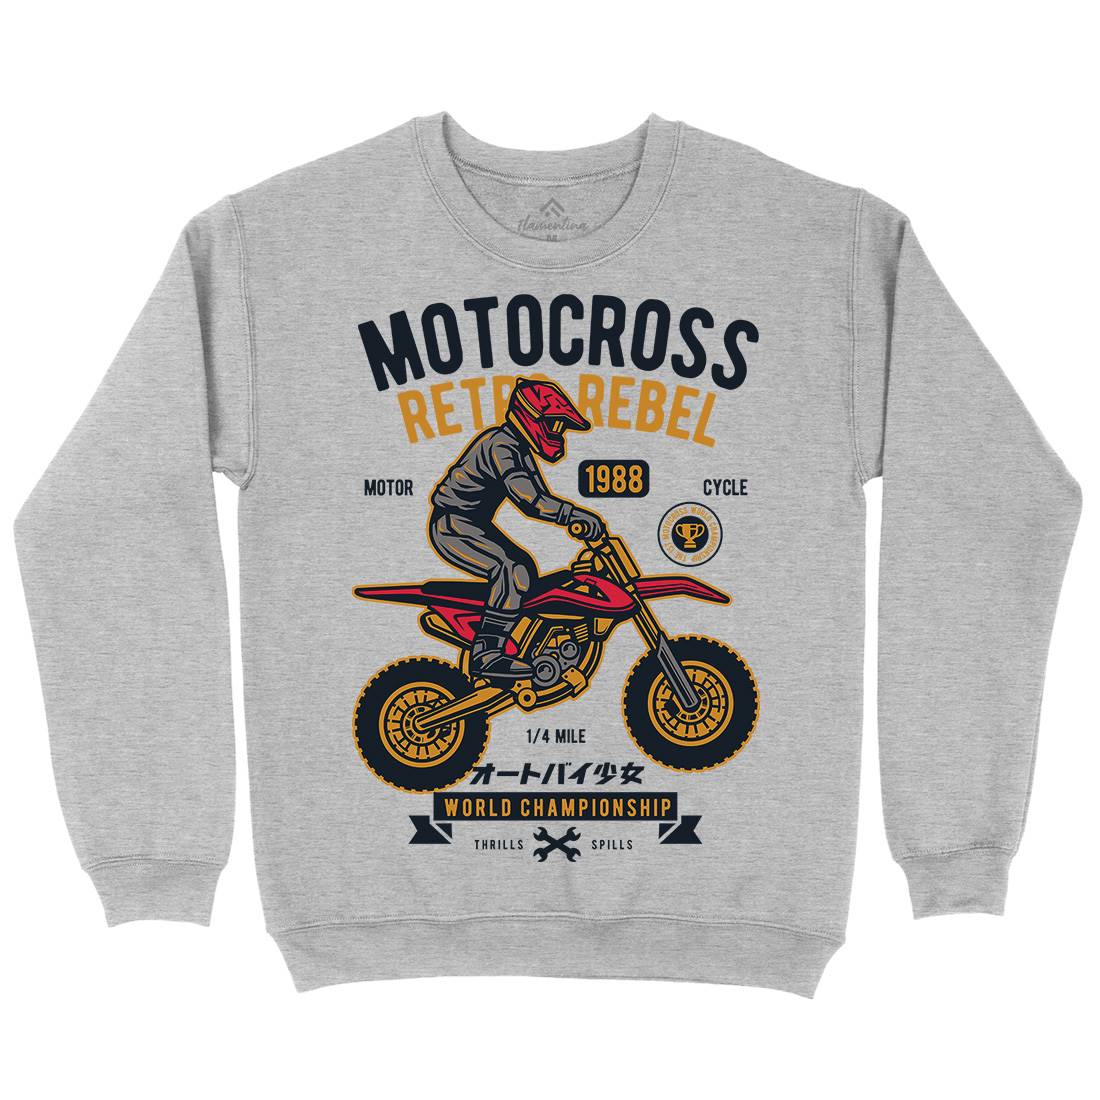 Motocross Retro Rebel Mens Crew Neck Sweatshirt Motorcycles D553